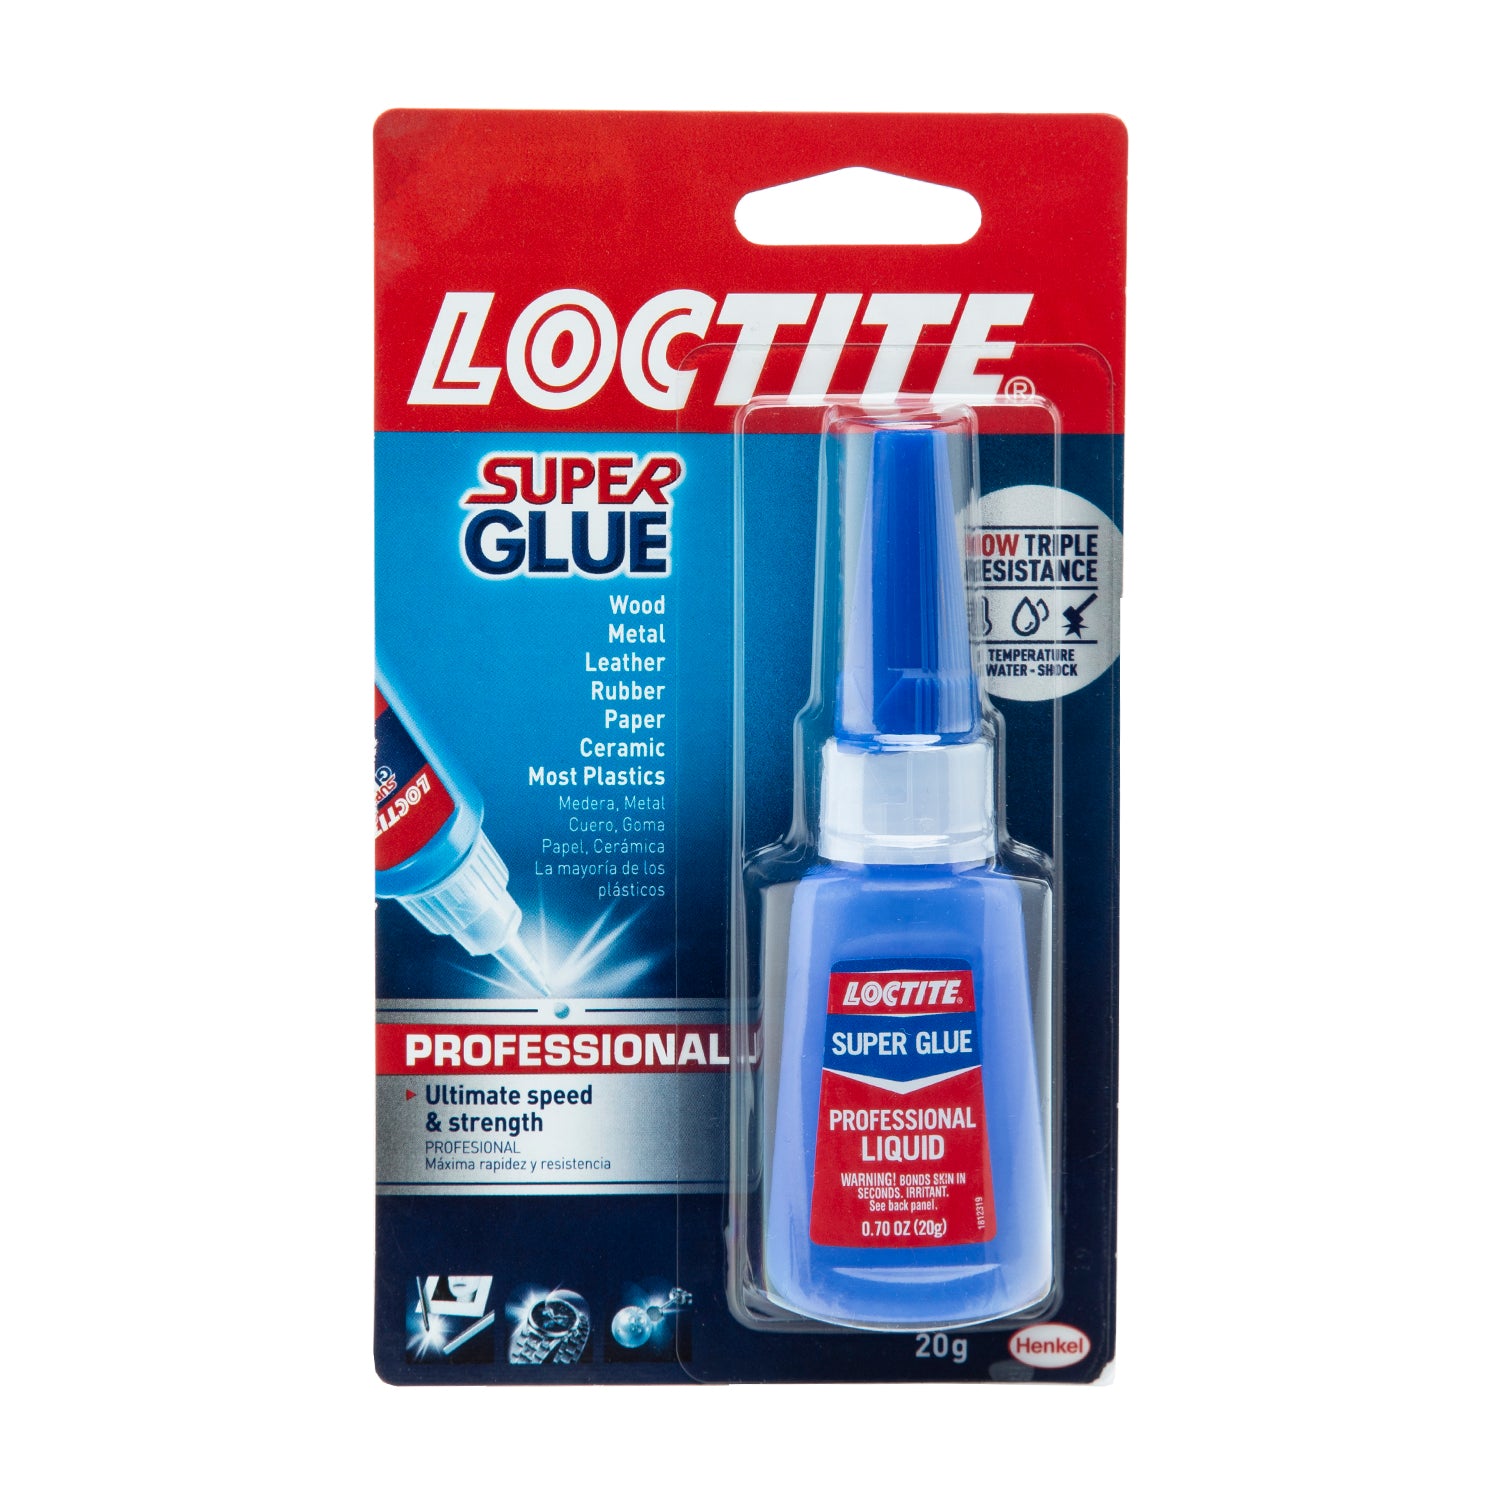 Loctite Super Glue Instant Adhesive - Professional Liquid - 20g bottle data-zoom=